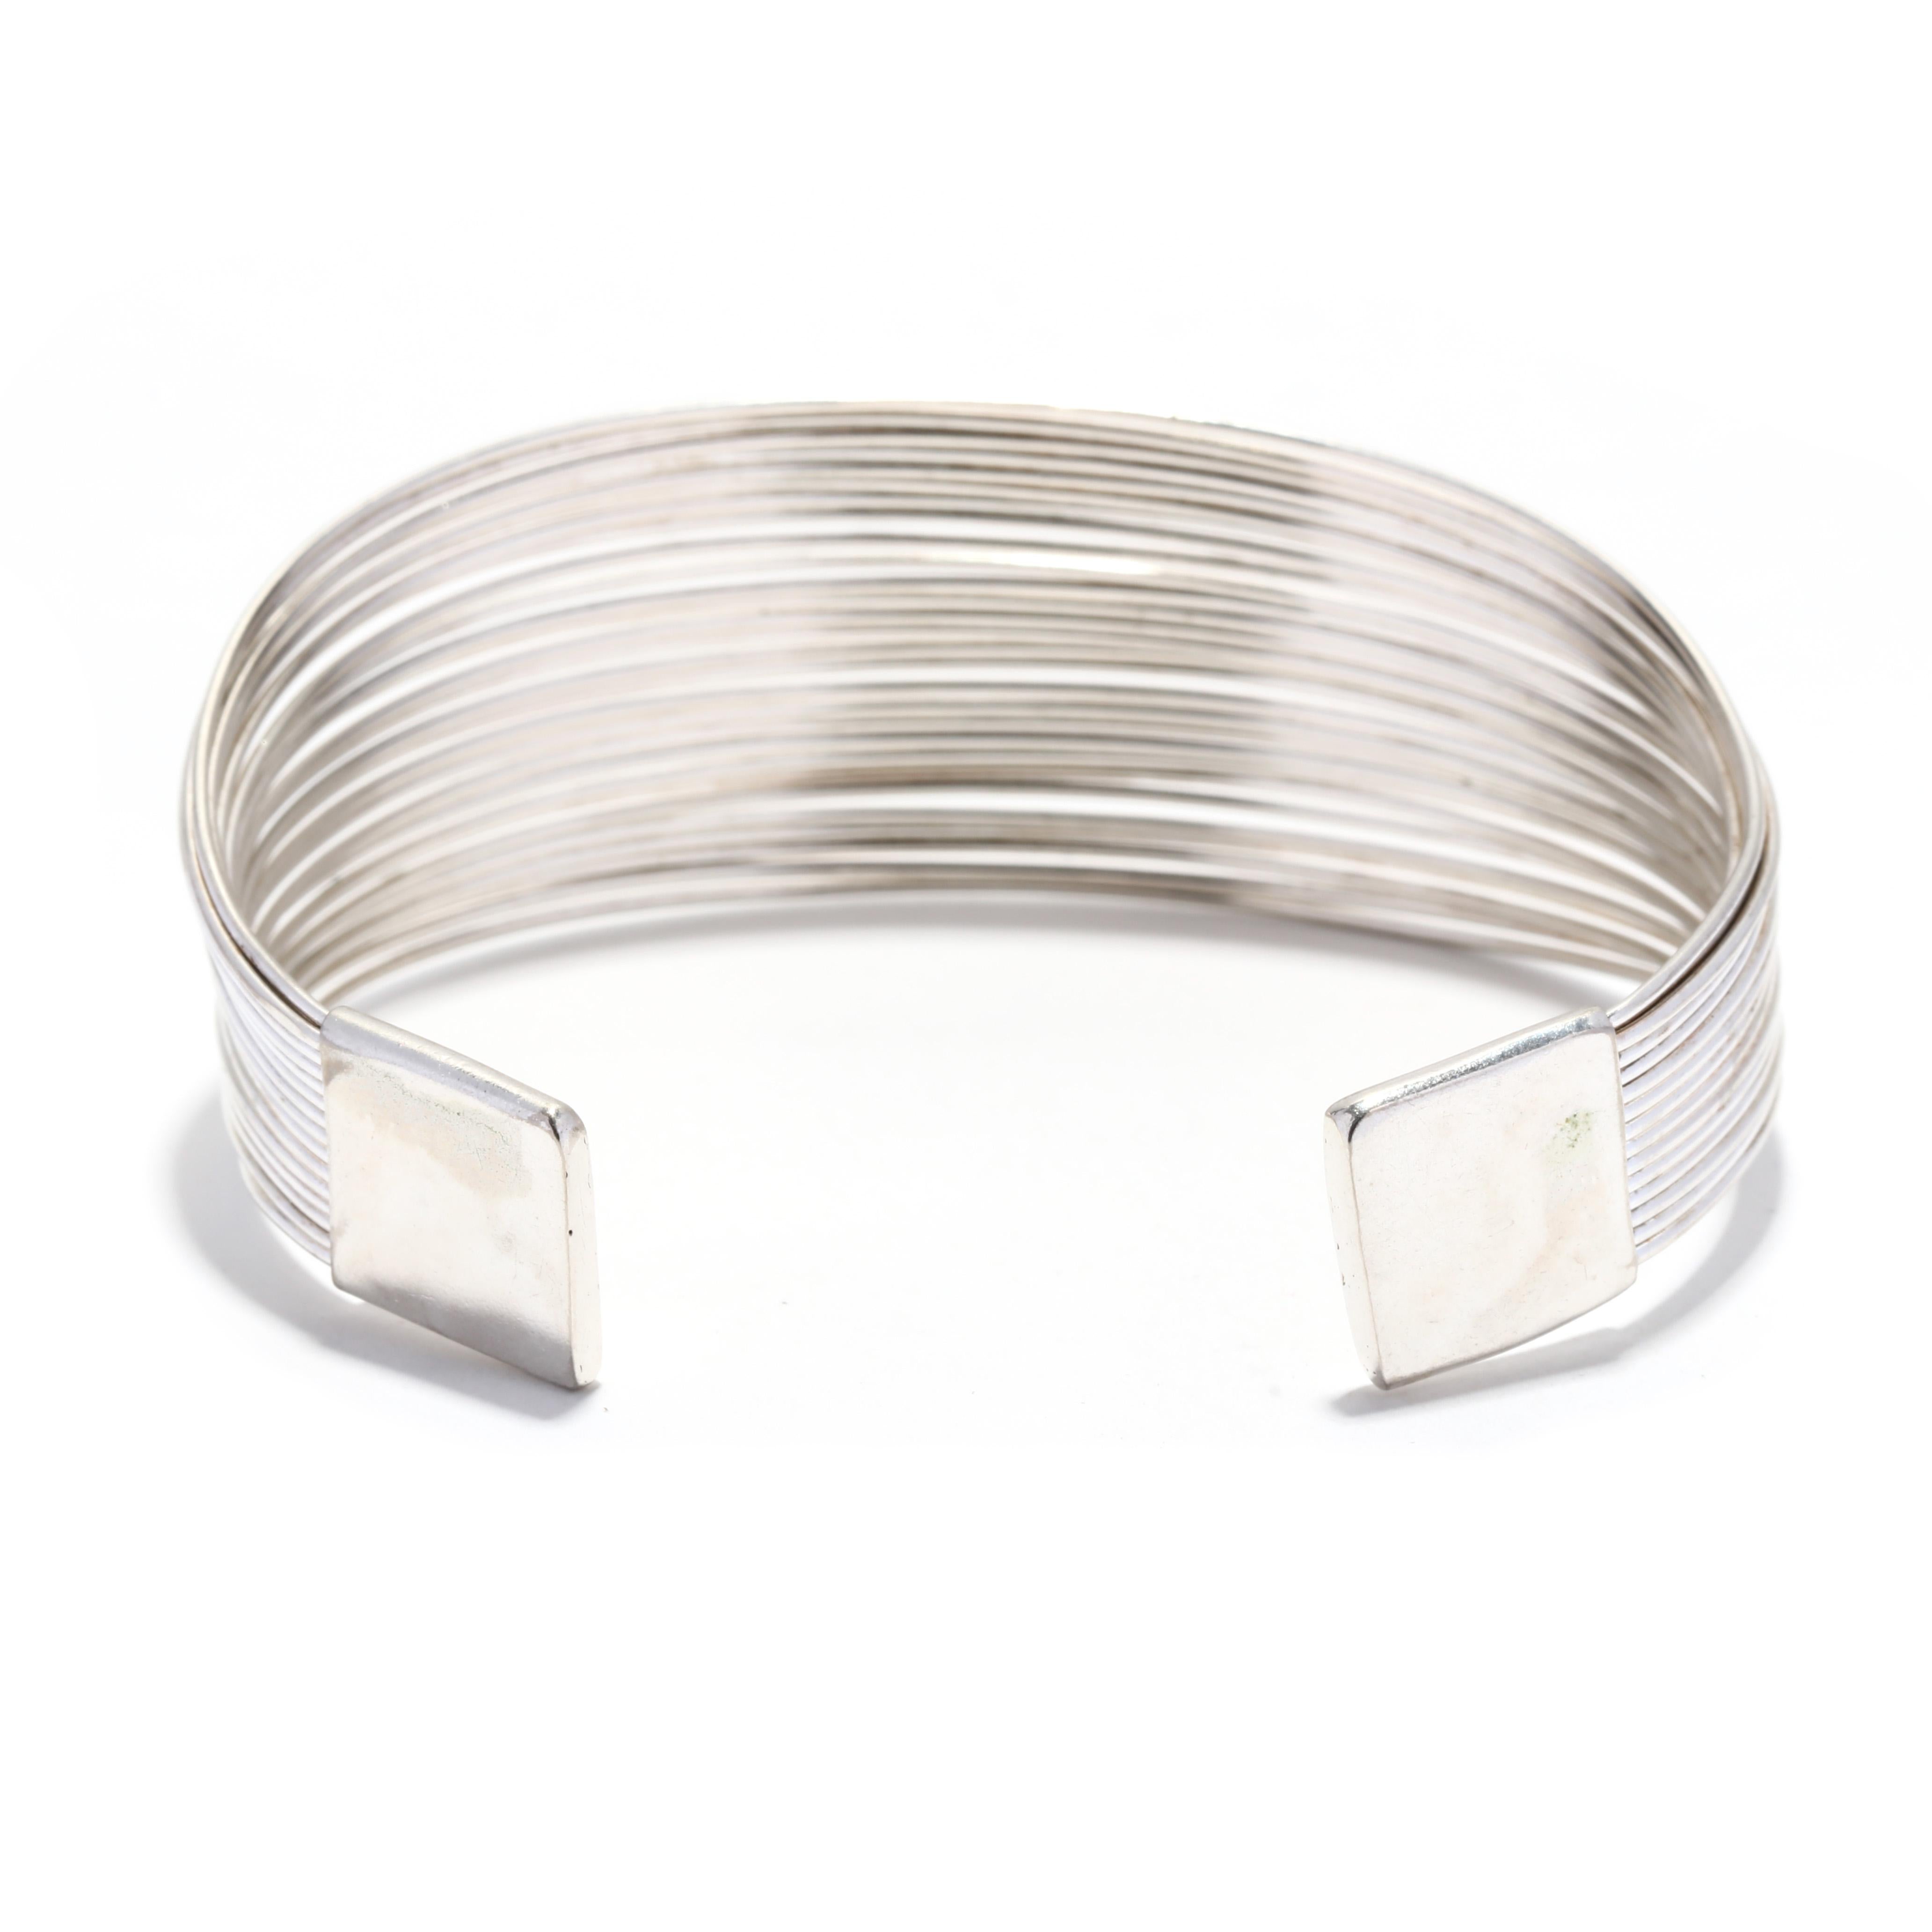 Women's or Men's Multi-Strand Wire Cuff Bracelet, Sterling Silver, Minimalist